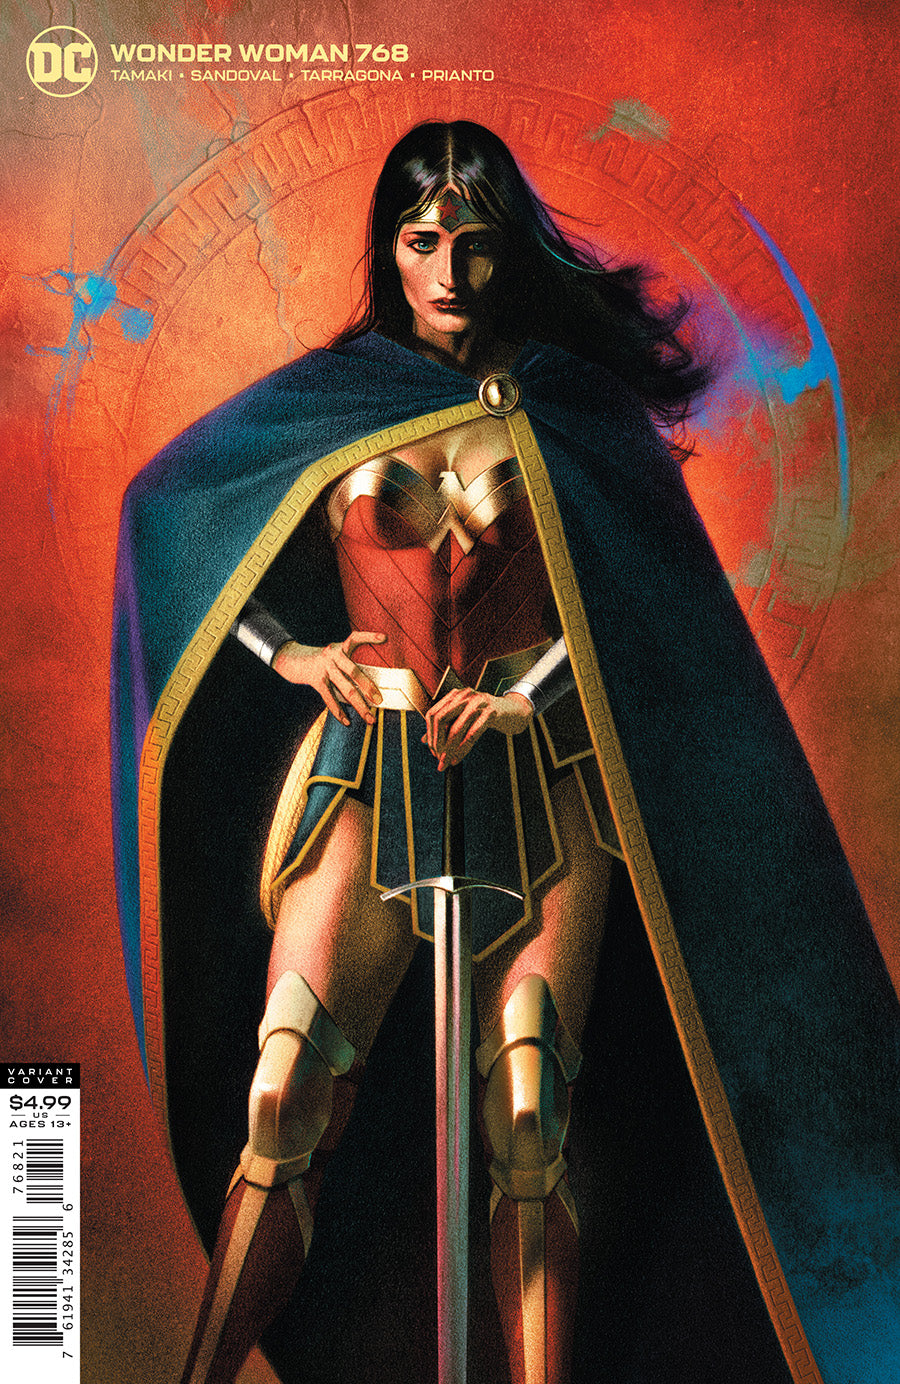 Wonder Woman 768 - Heroes Cave